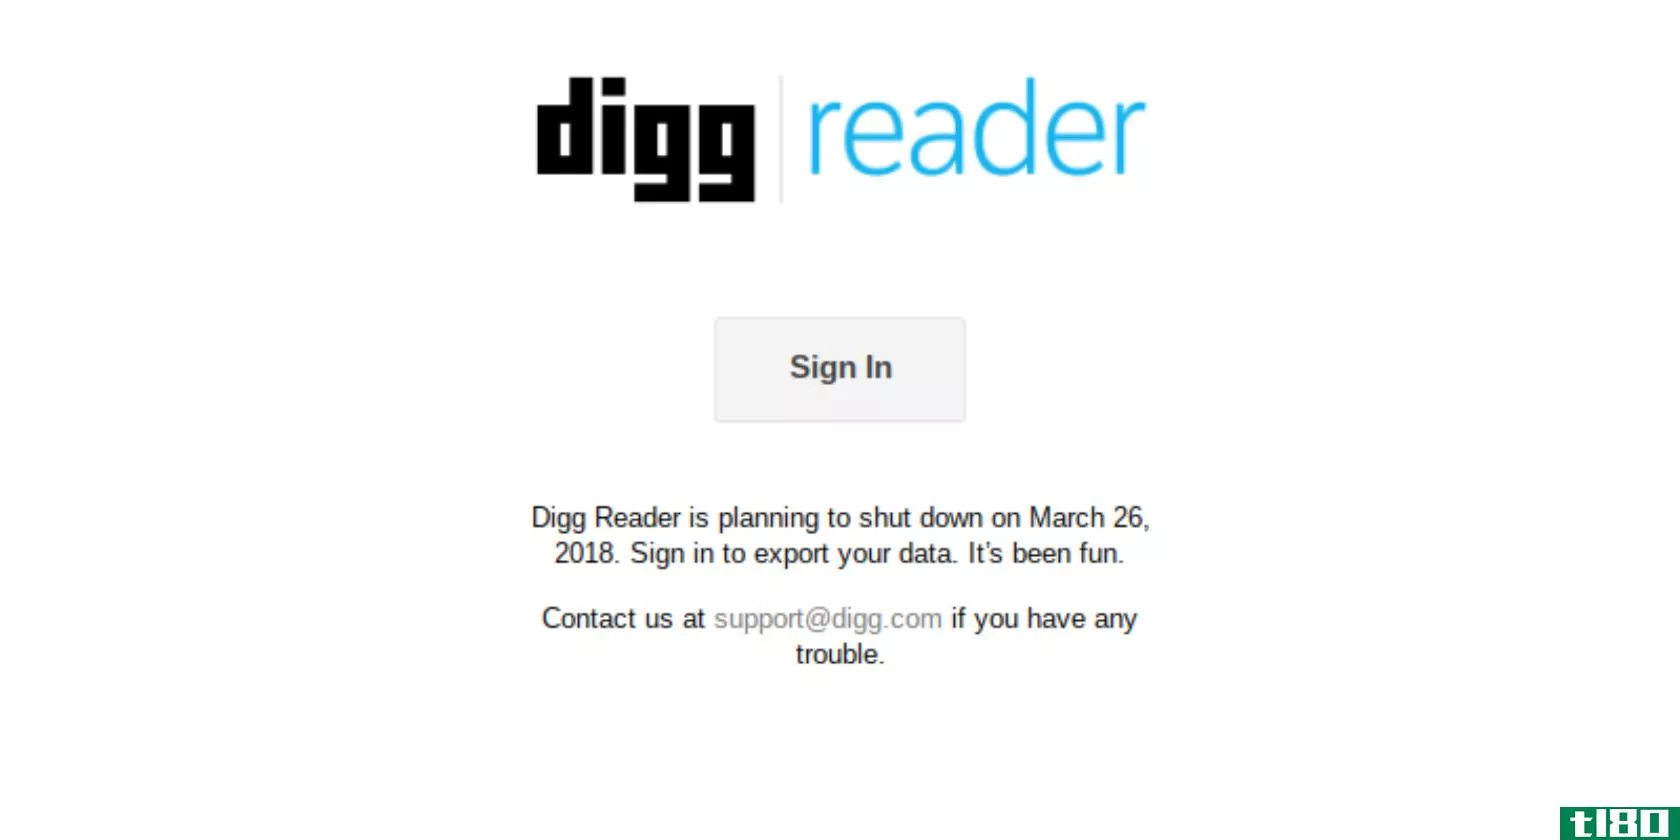 digg-reader-shutting-down